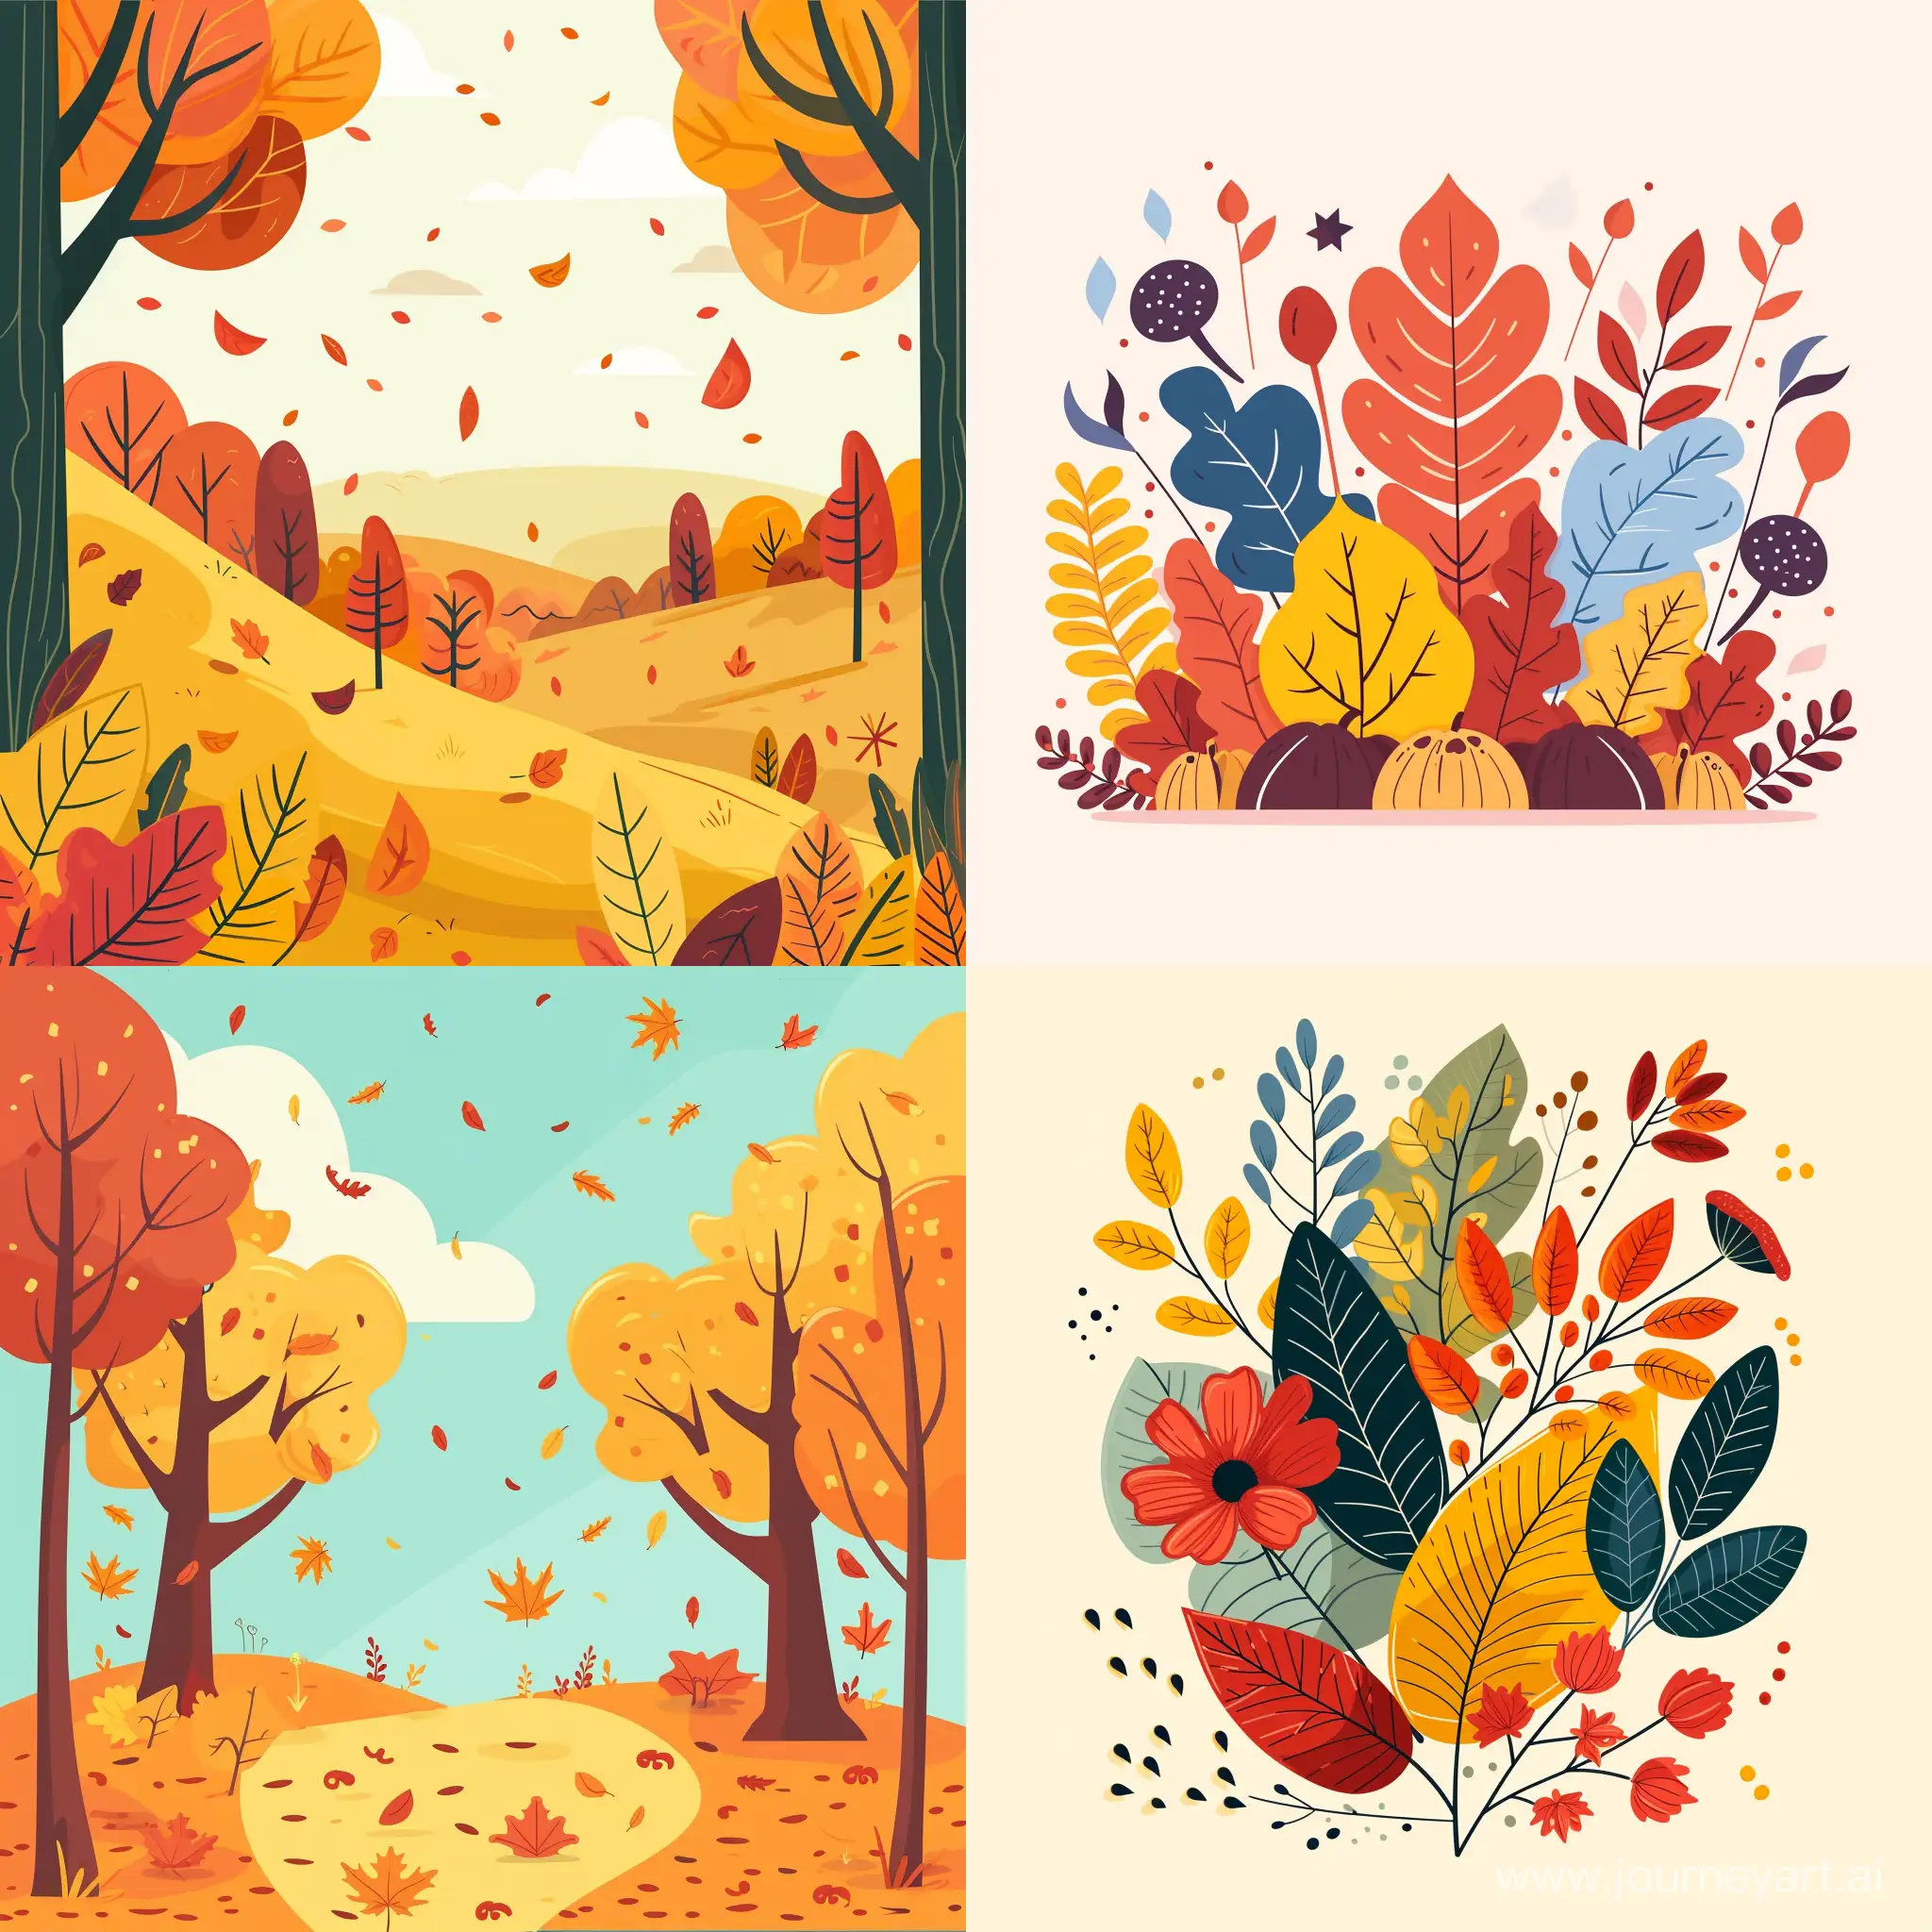 Vibrant-Flat-Style-Autumn-Scene-Illustration